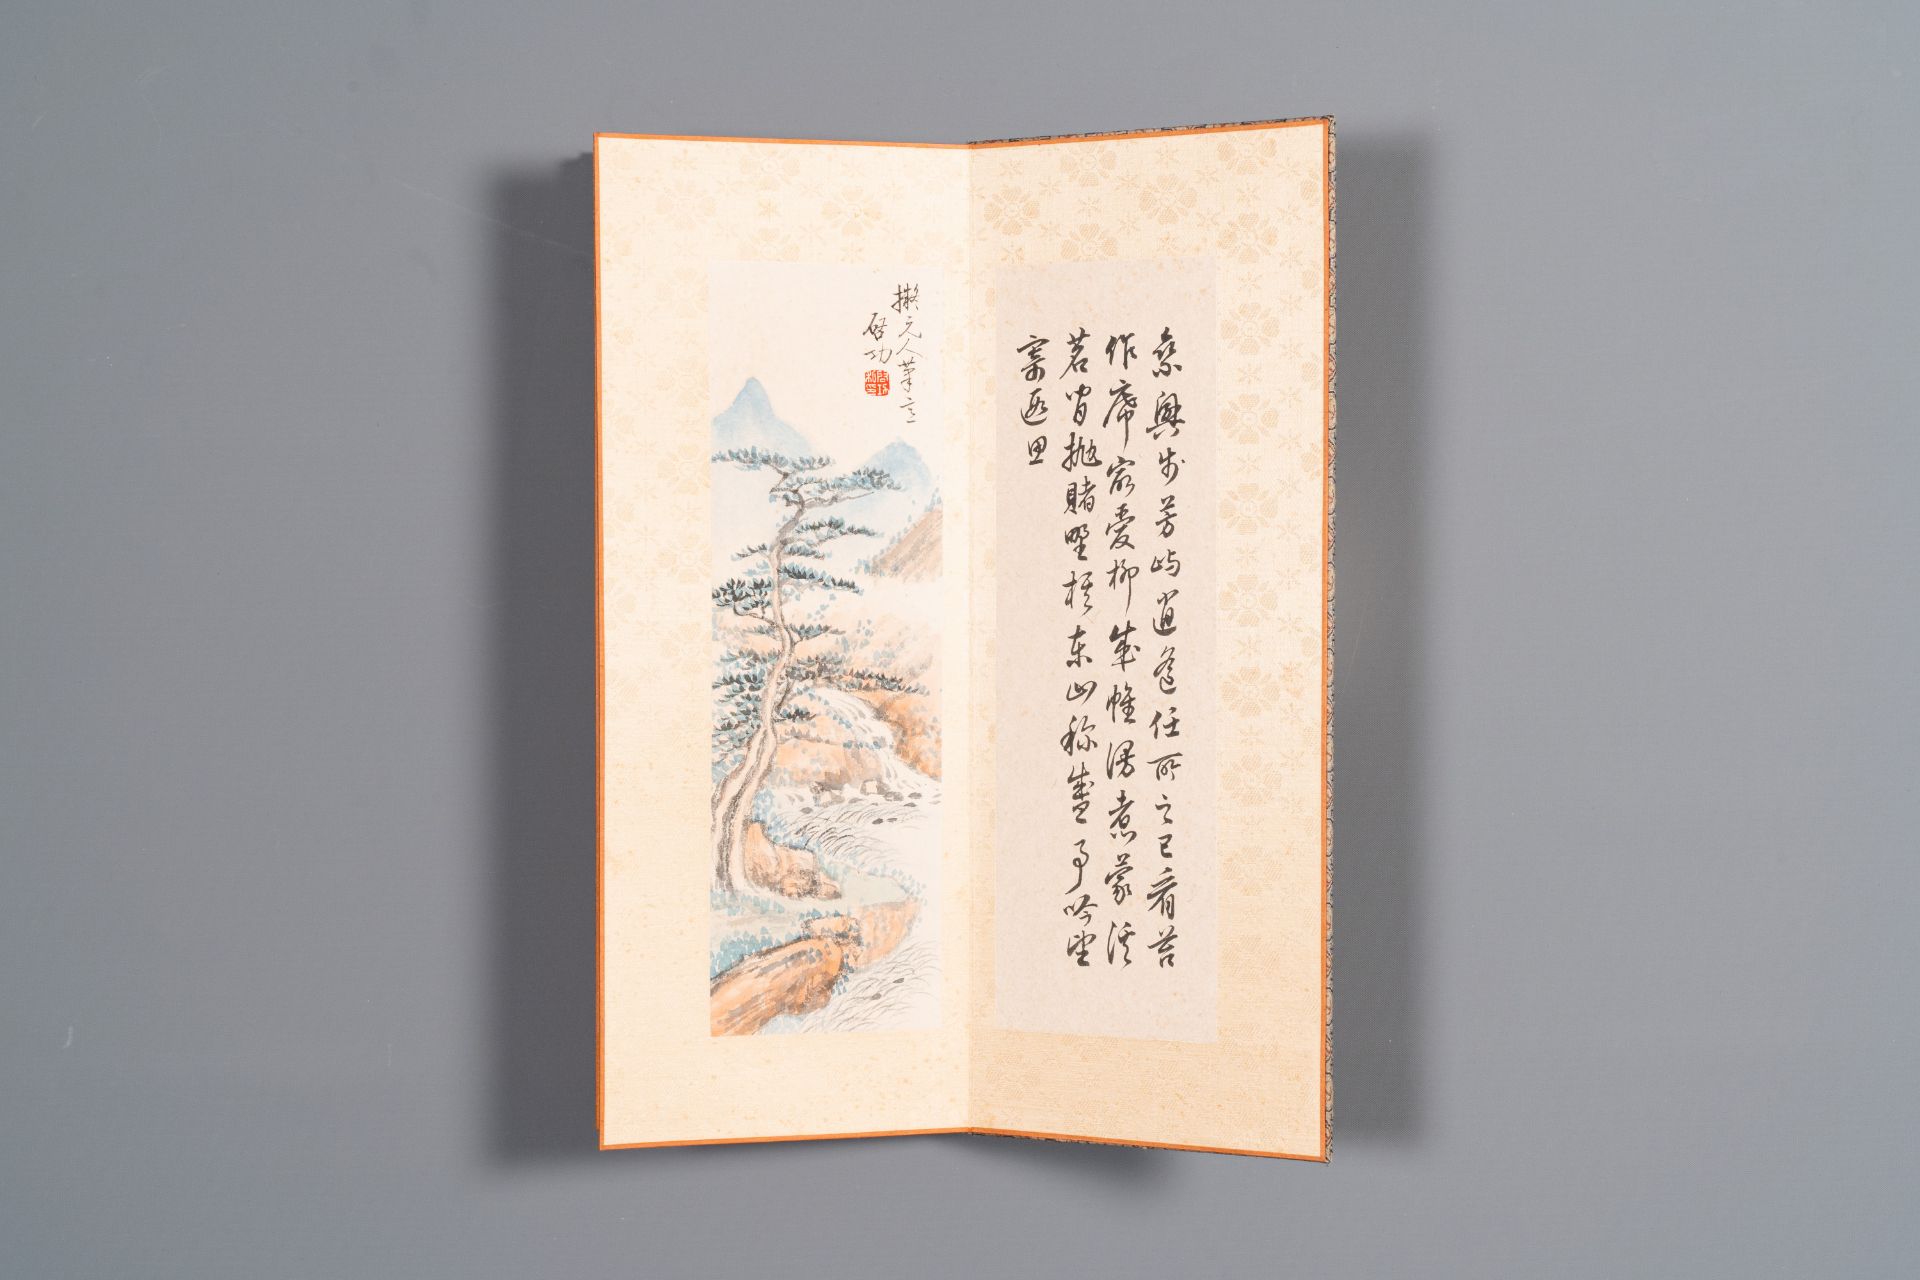 Three albums: 'Jiang Hanting æ±Ÿå¯’æ±€ (1904-1963), Lin Sanzhi æž—æ•£ä¹‹ (1898-1989) and Qi Gong å¯ - Bild 16 aus 23